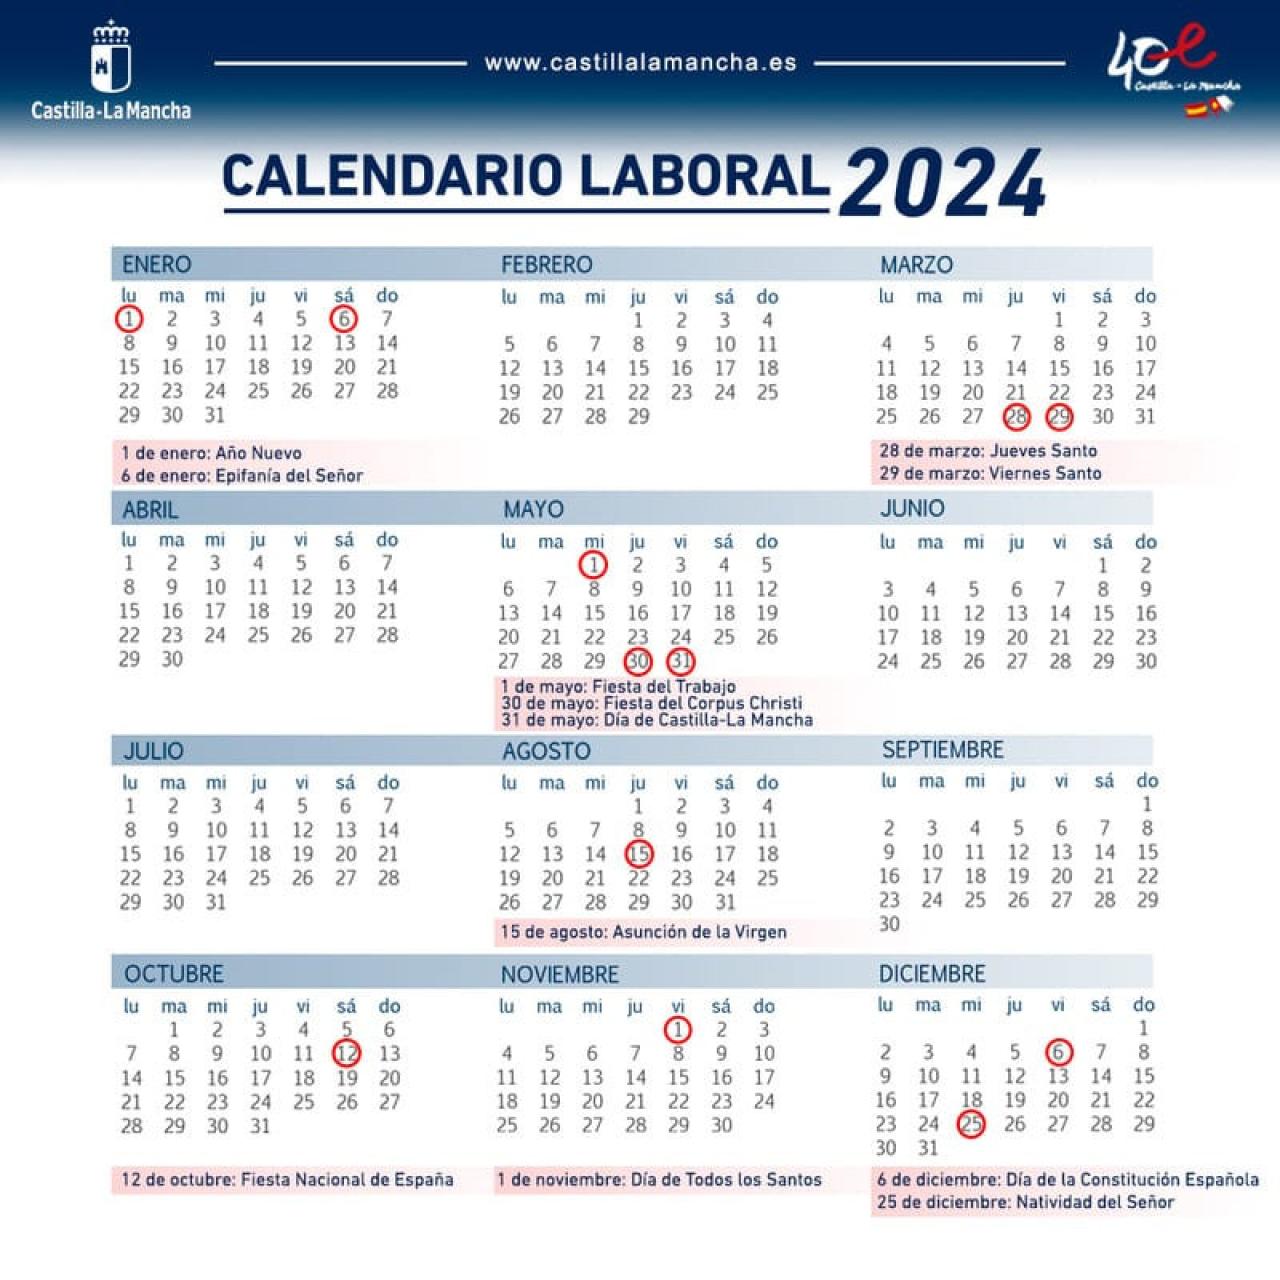 Calendario laboral de 2024 en Castilla-La Mancha